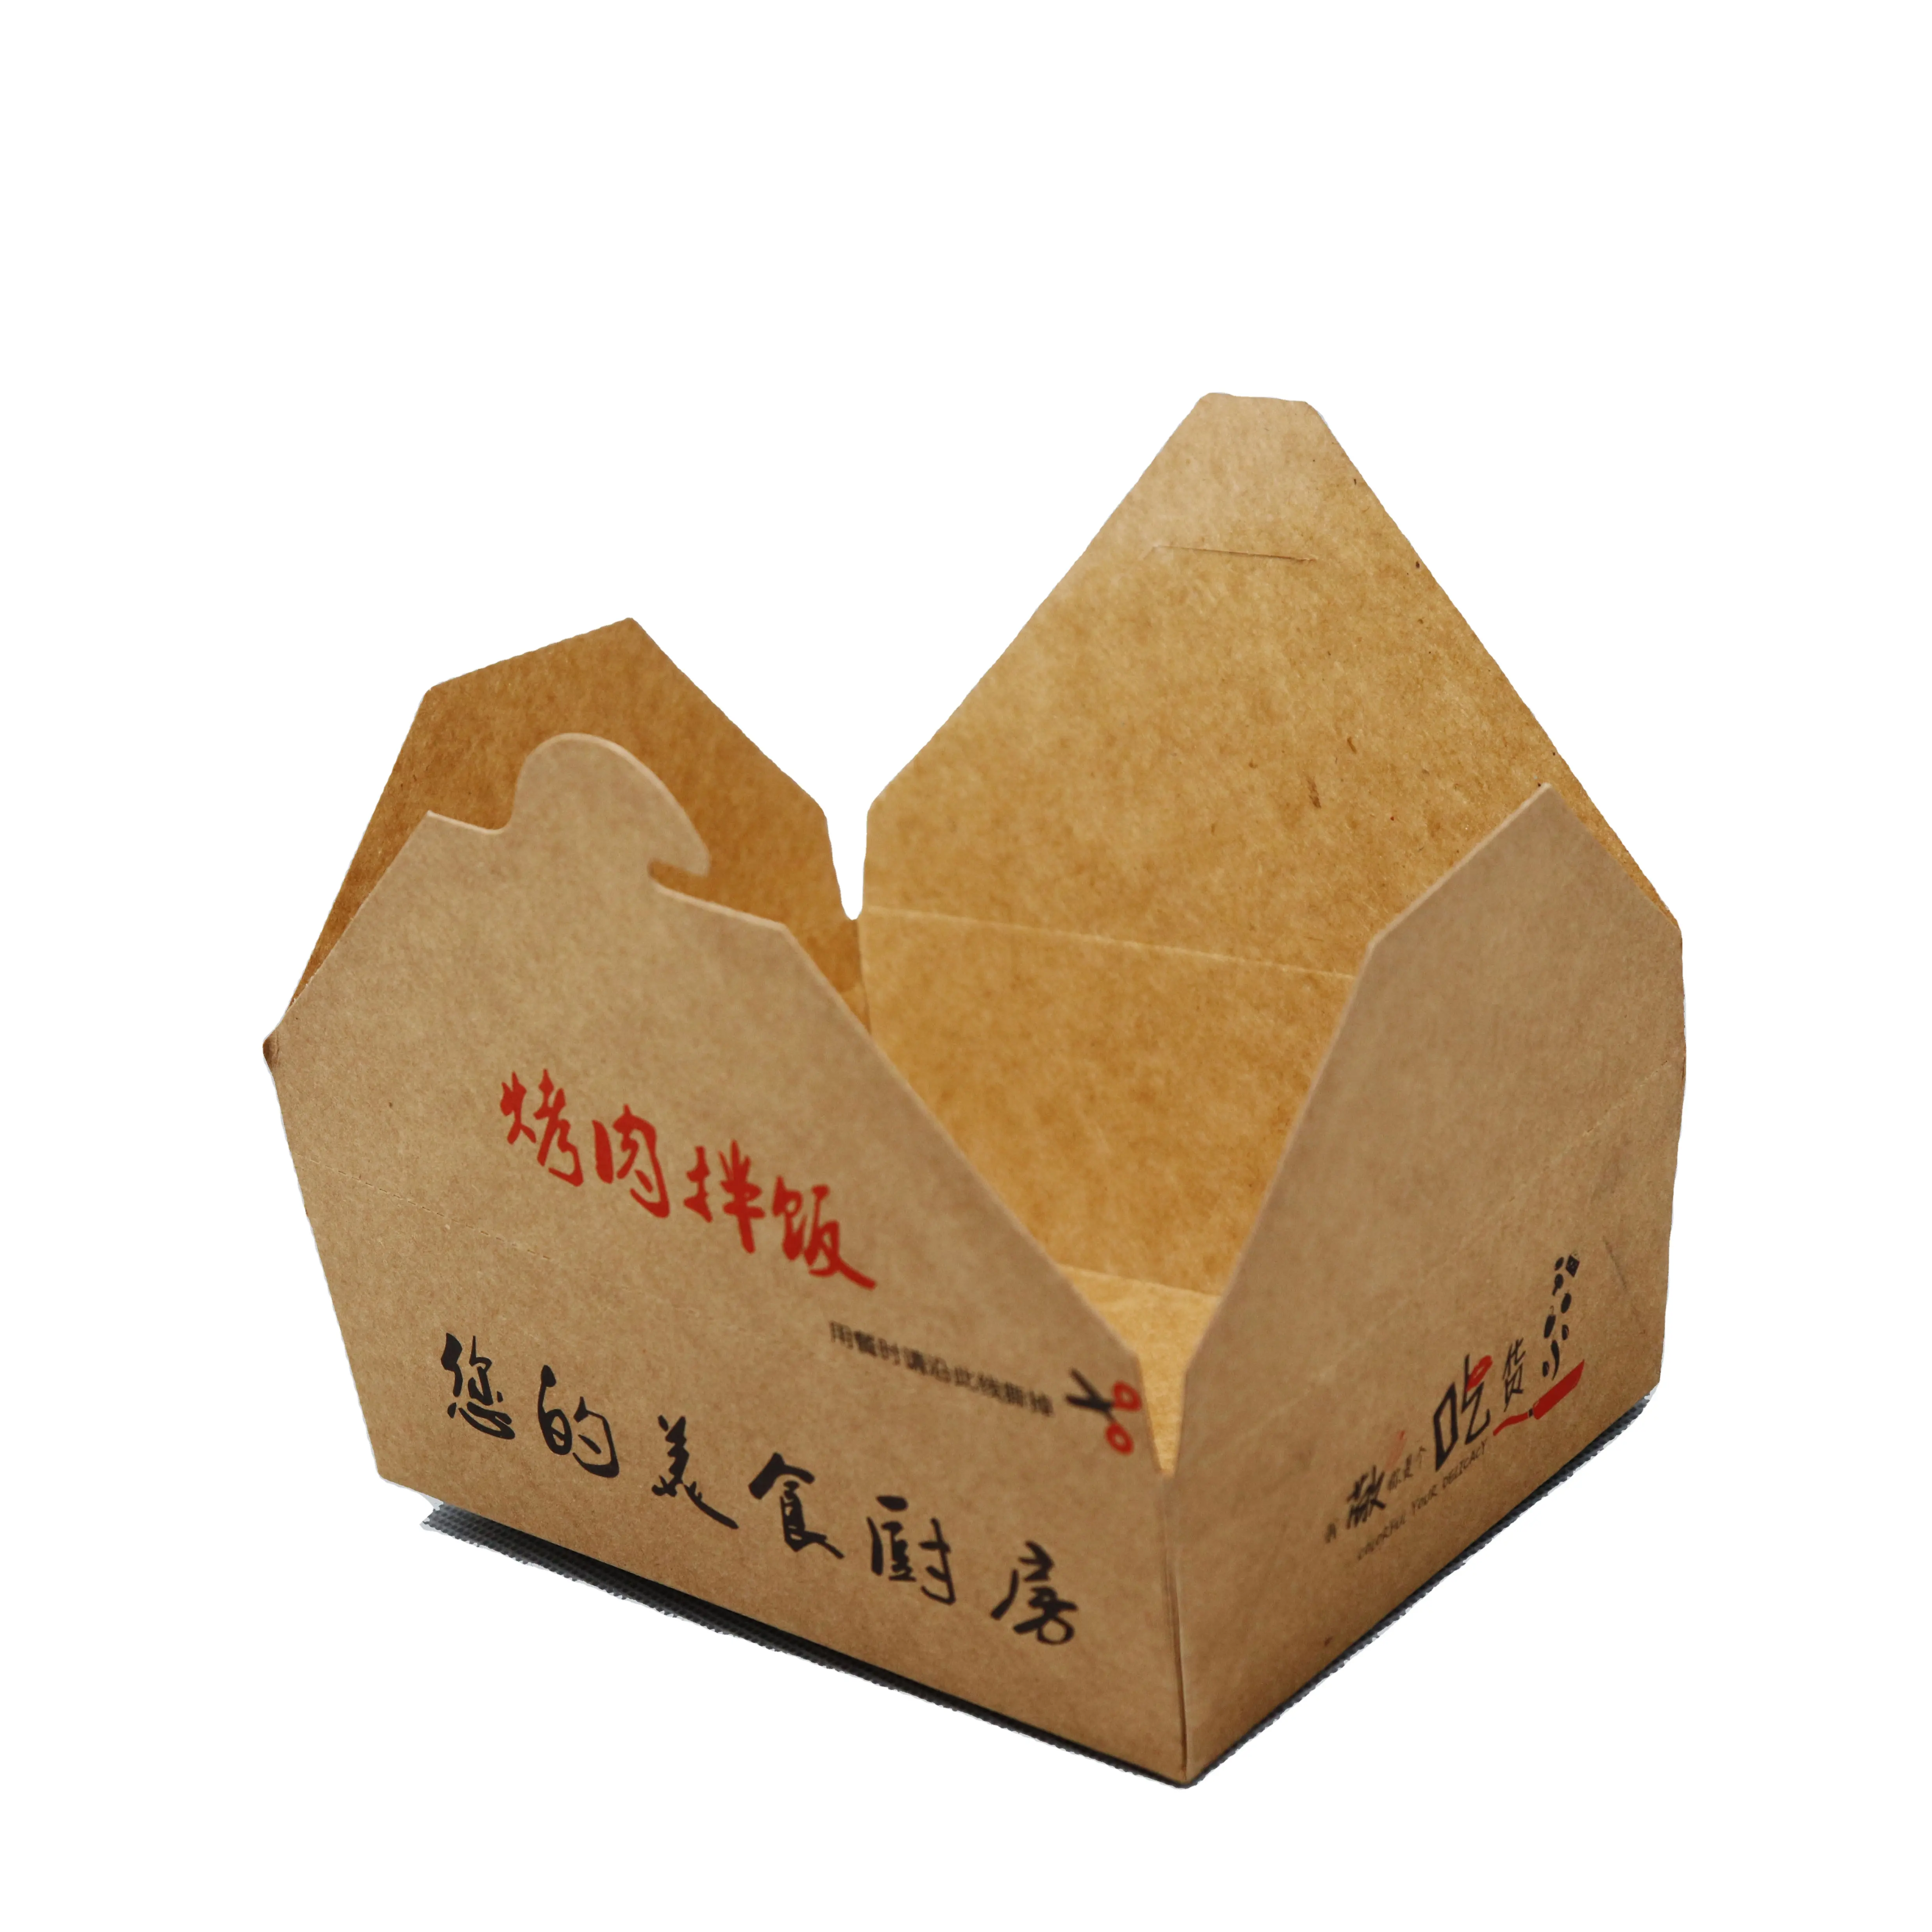 저렴한 가격 맞춤형 패스트 푸드 포도 테이크 아웃 포장 생분해성 내유성 상자 식품 포장 상자